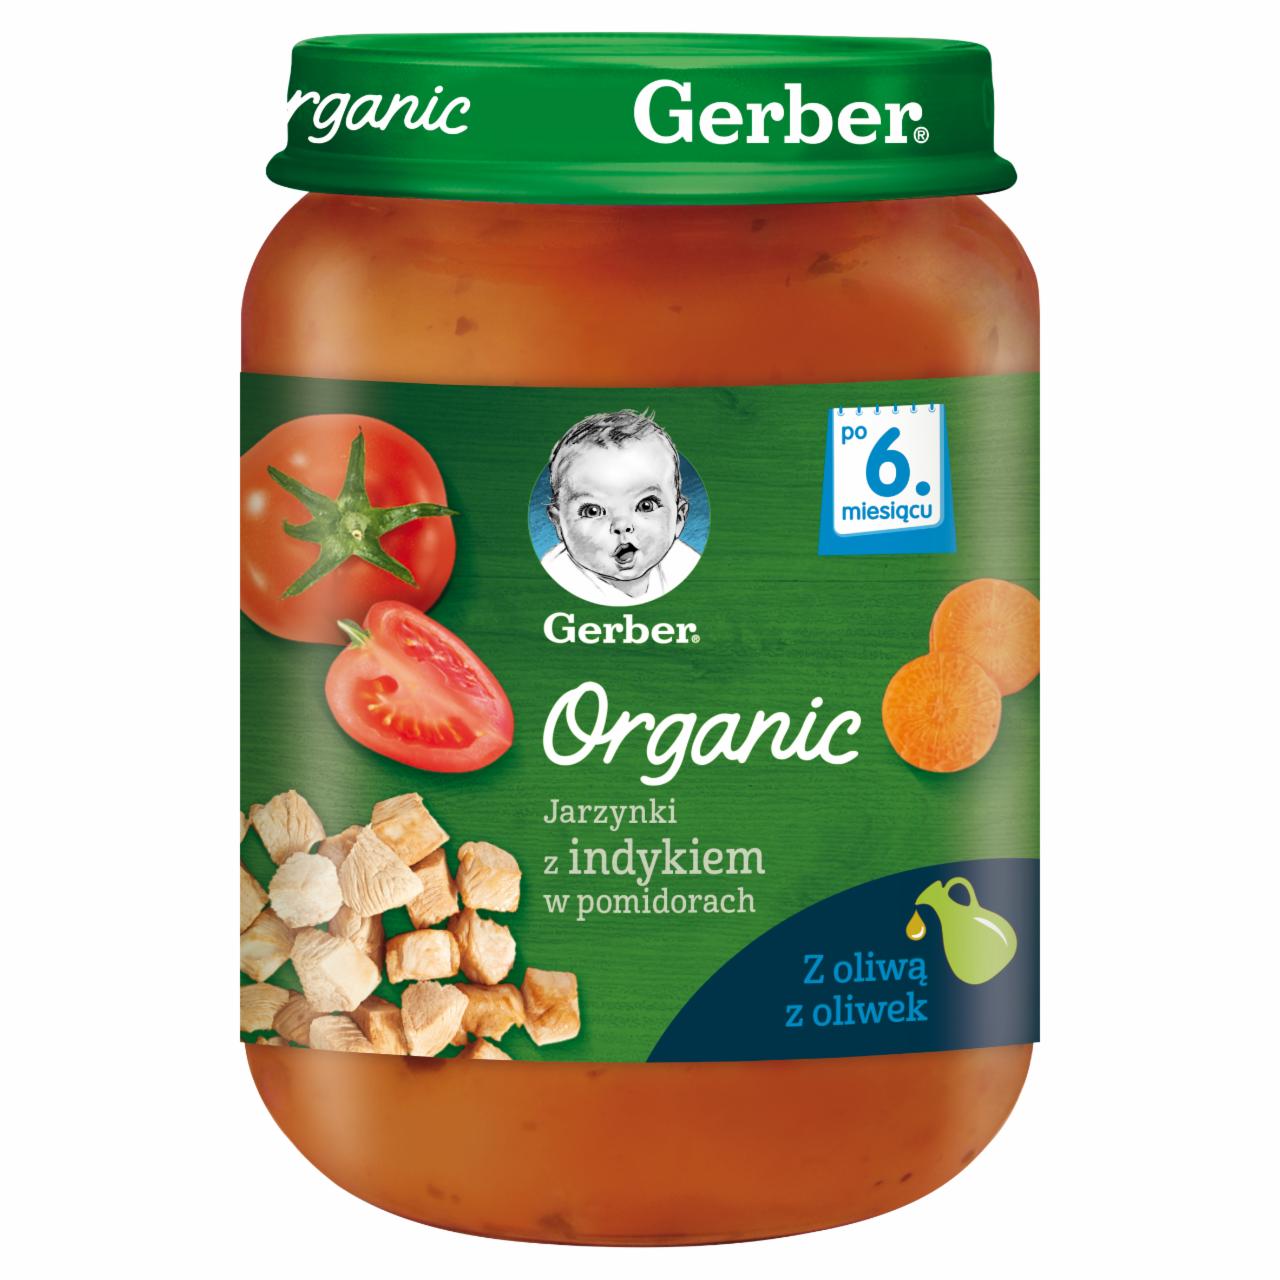 Zdjęcia - Gerber Organic Jarzynki z indykiem w pomidorach dla niemowląt po 6. miesiącu 190 g